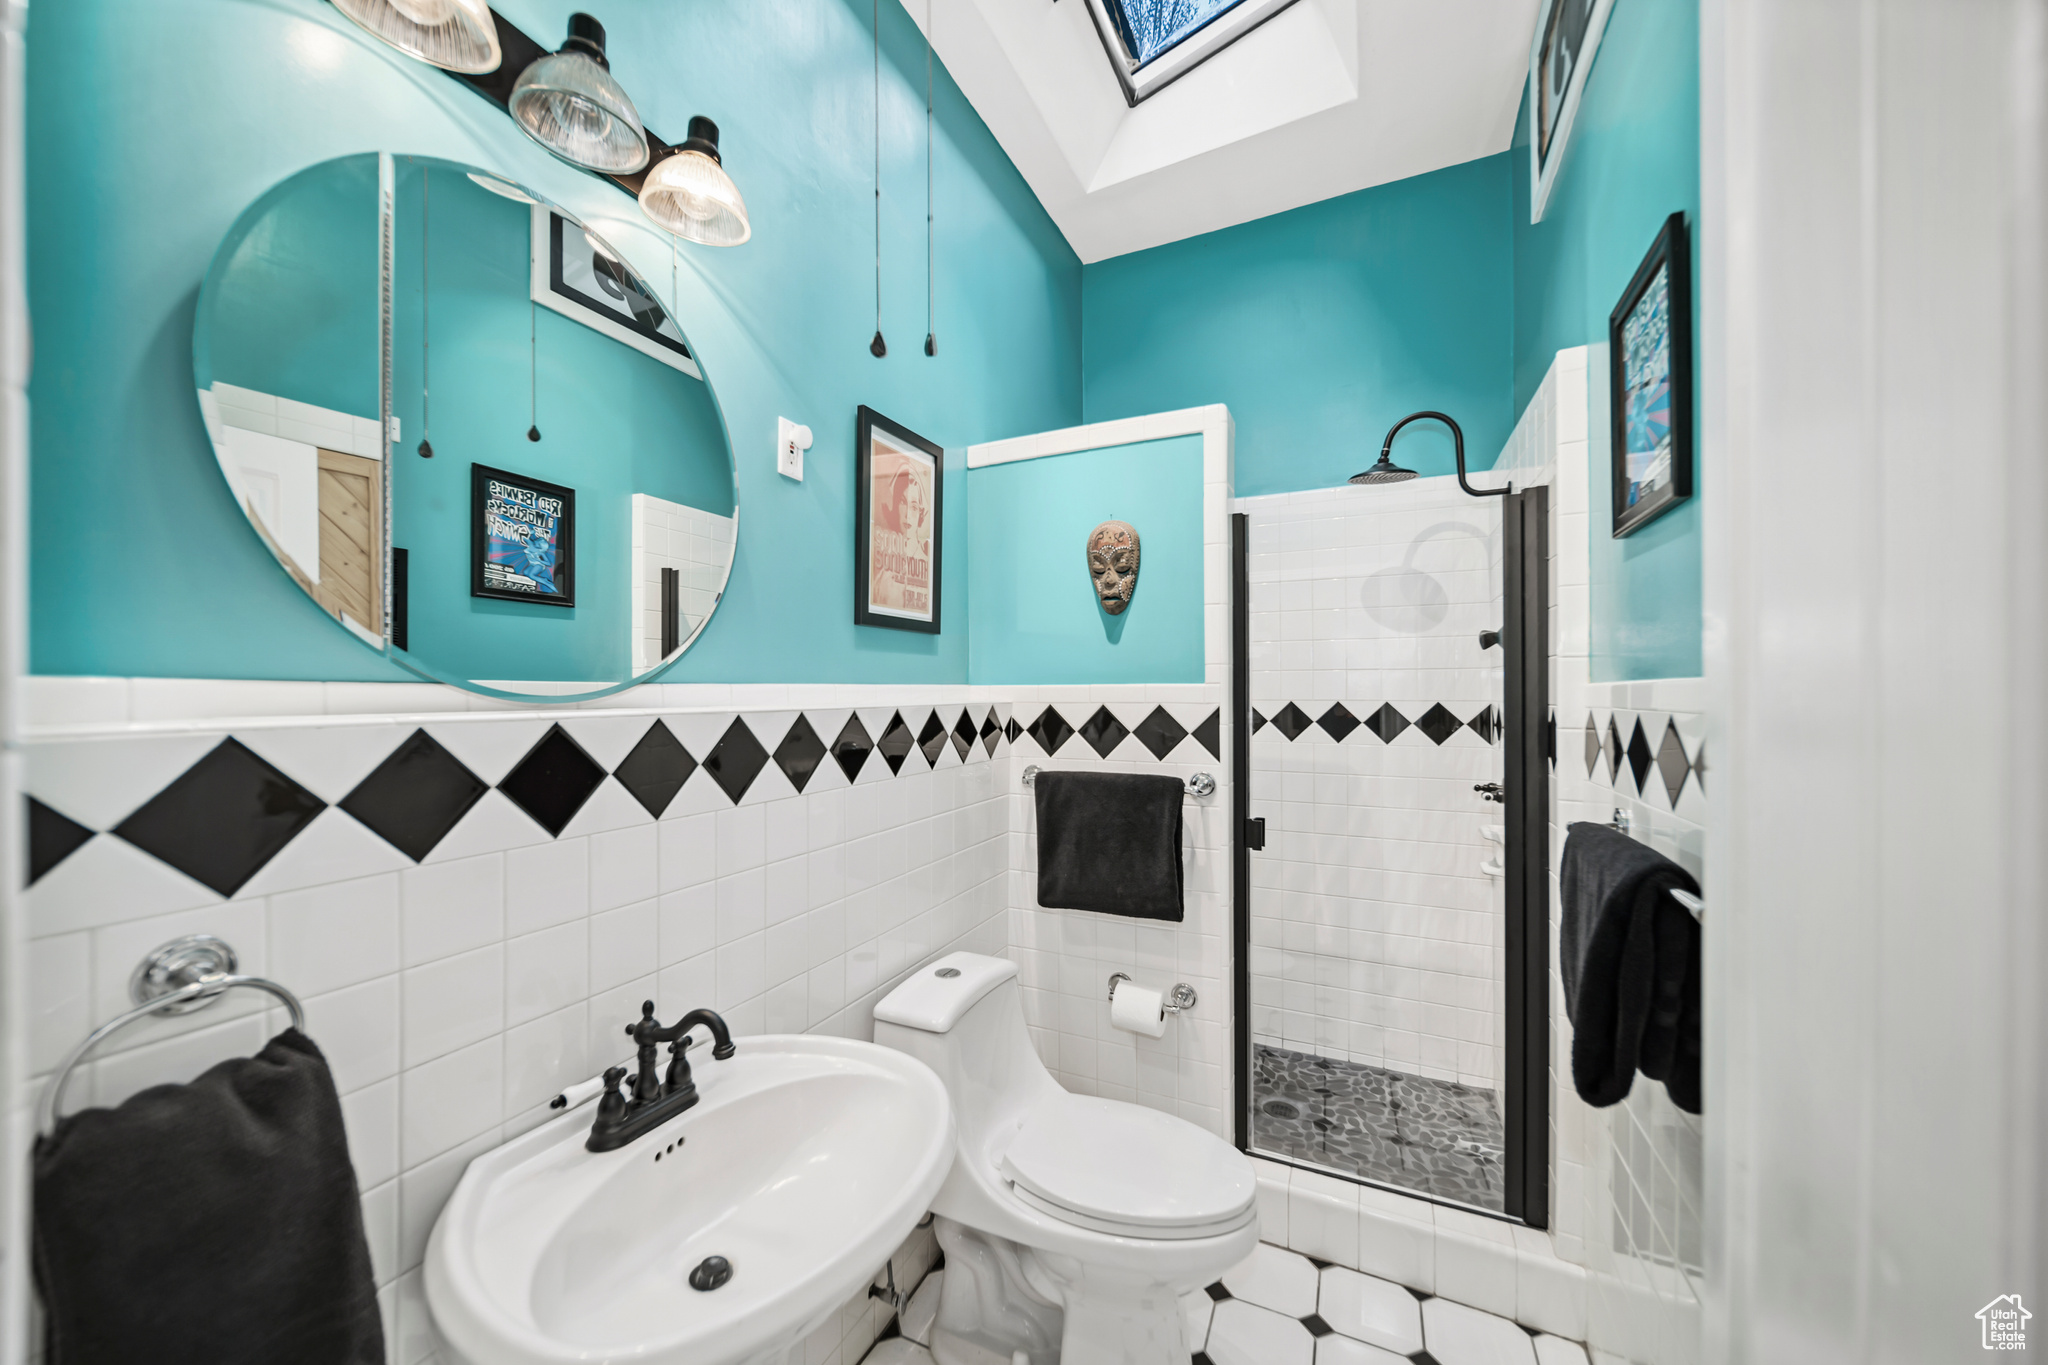 Bathroom 1, Tile, New Faucets, new Low-Flow toilet, New Shower Door, Medicine Cabinet, Skylights Ceiling Fan